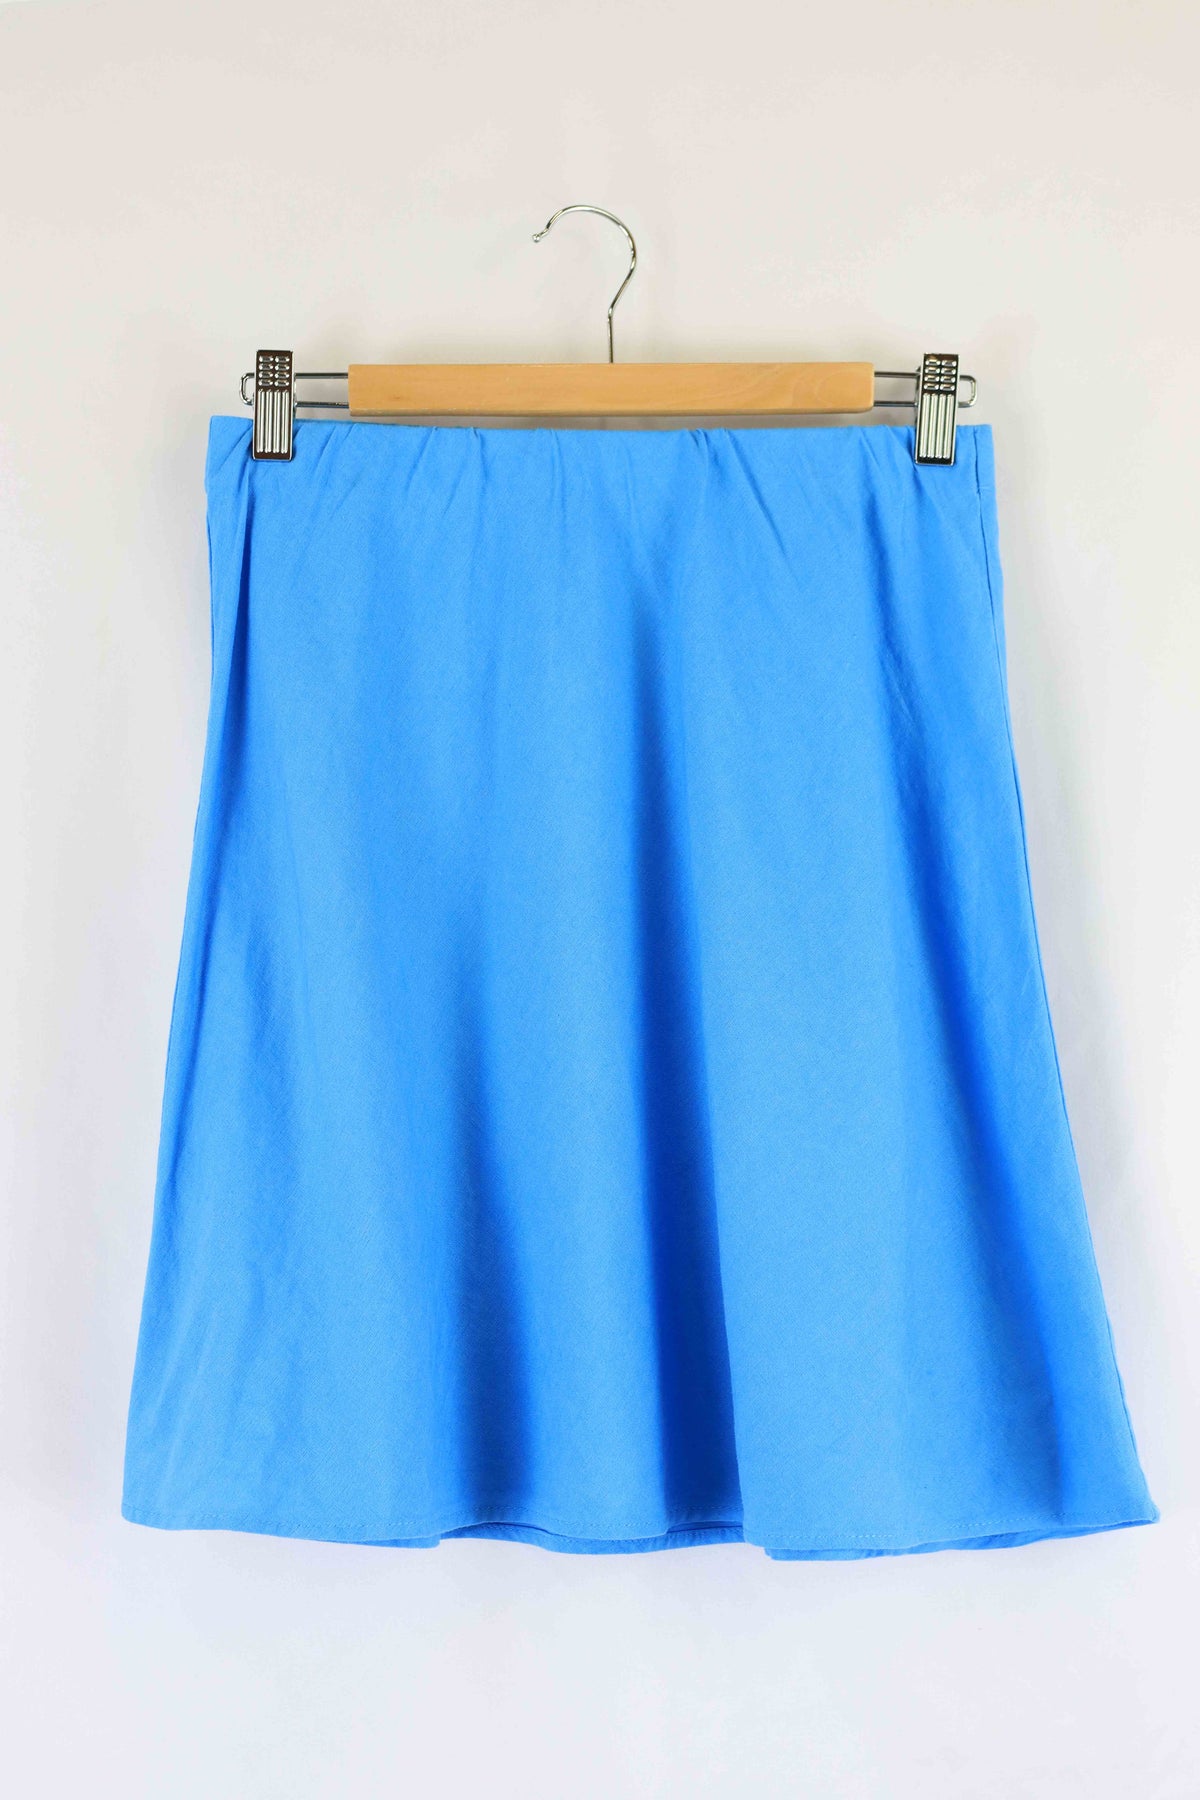 Sportsgirl Blue Skirt 8